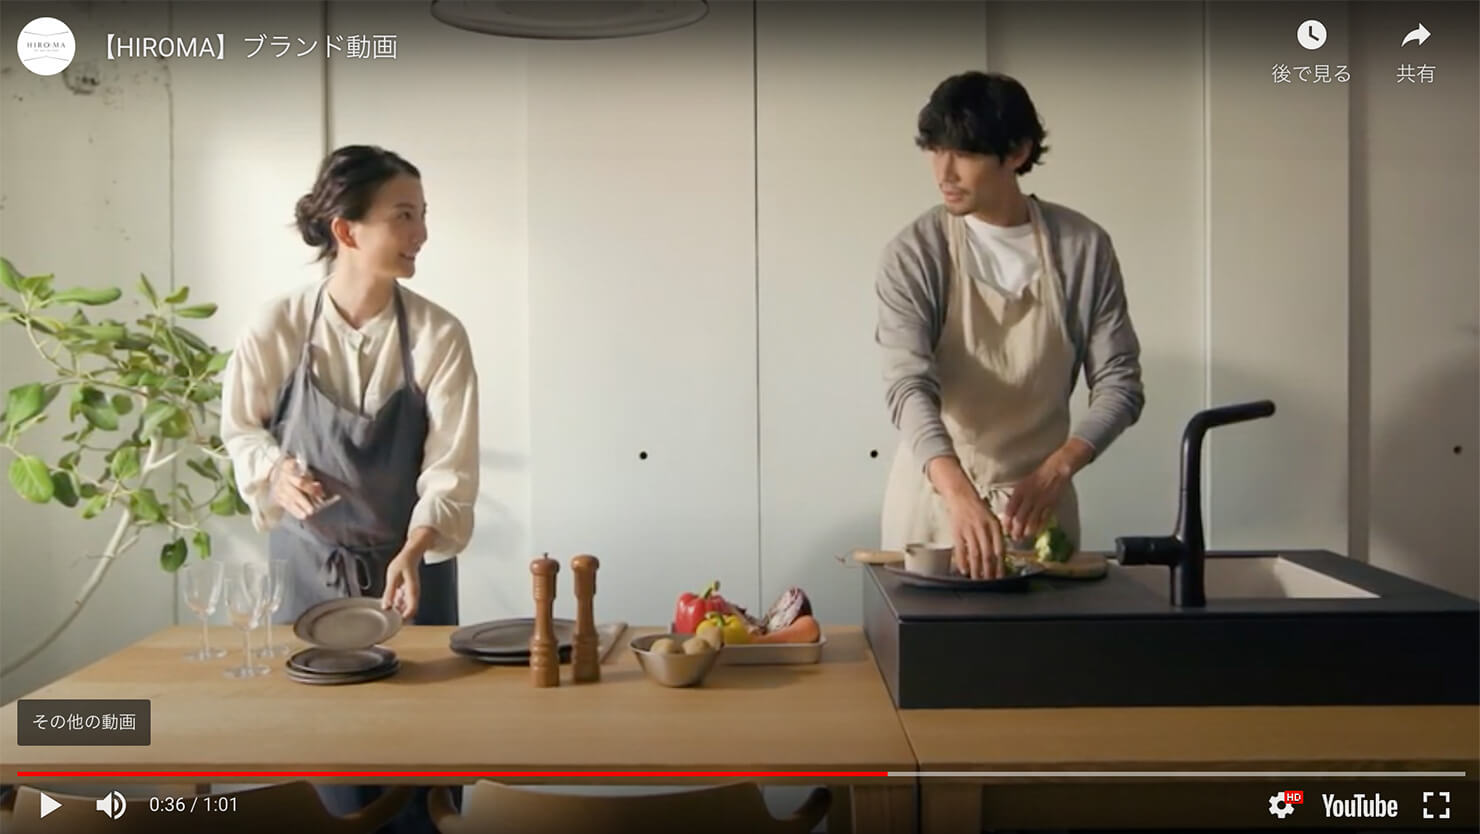 動画キャプチャ：夫婦が微笑み合いながら夕食を作っているシーン。